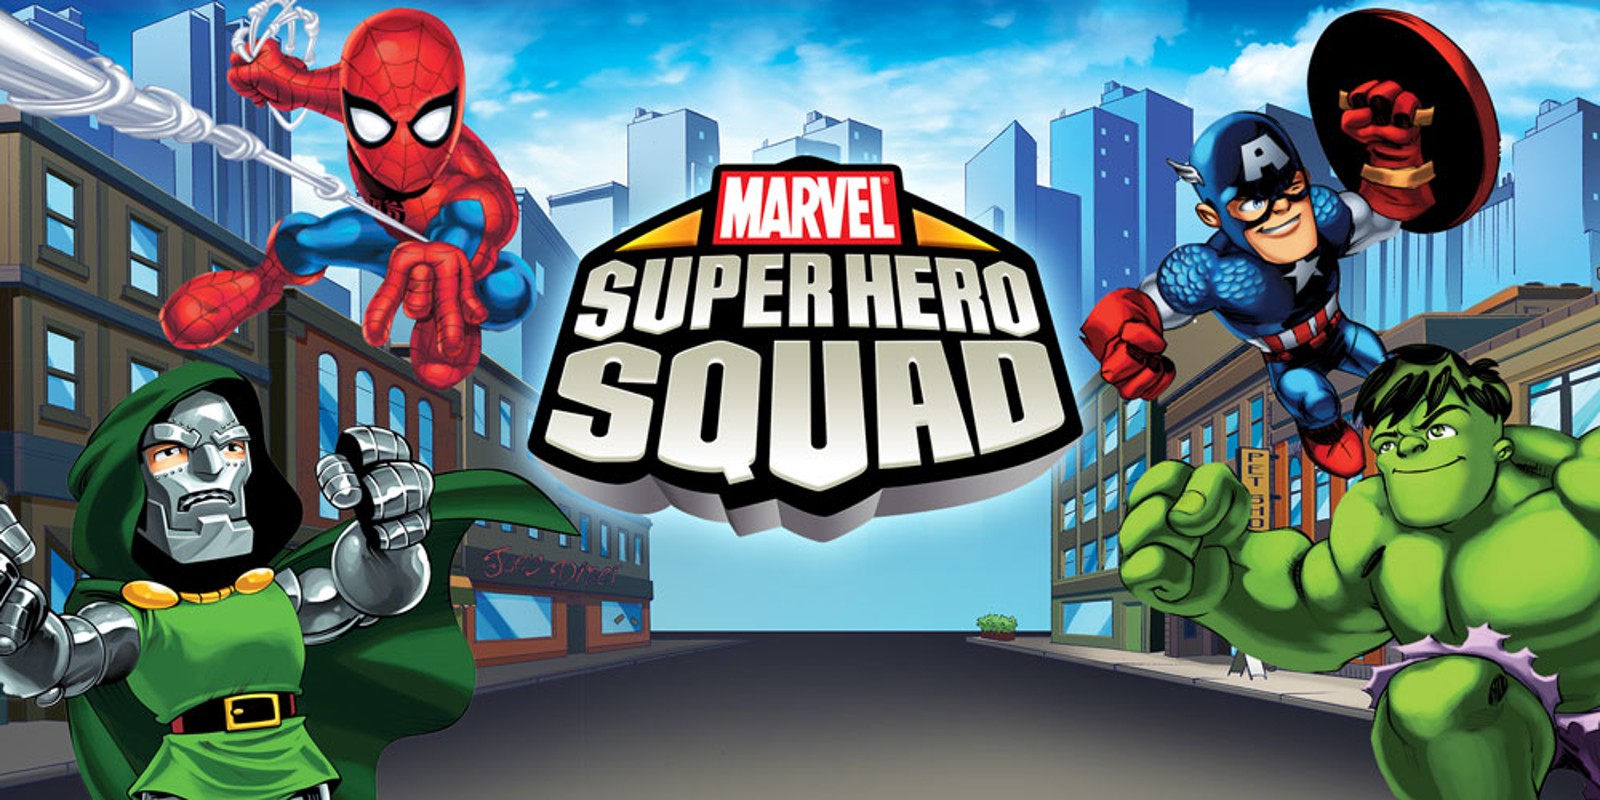 Automático Corchete Aventurero Marvel Super Hero Squad | Nintendo DS | Juegos | Nintendo